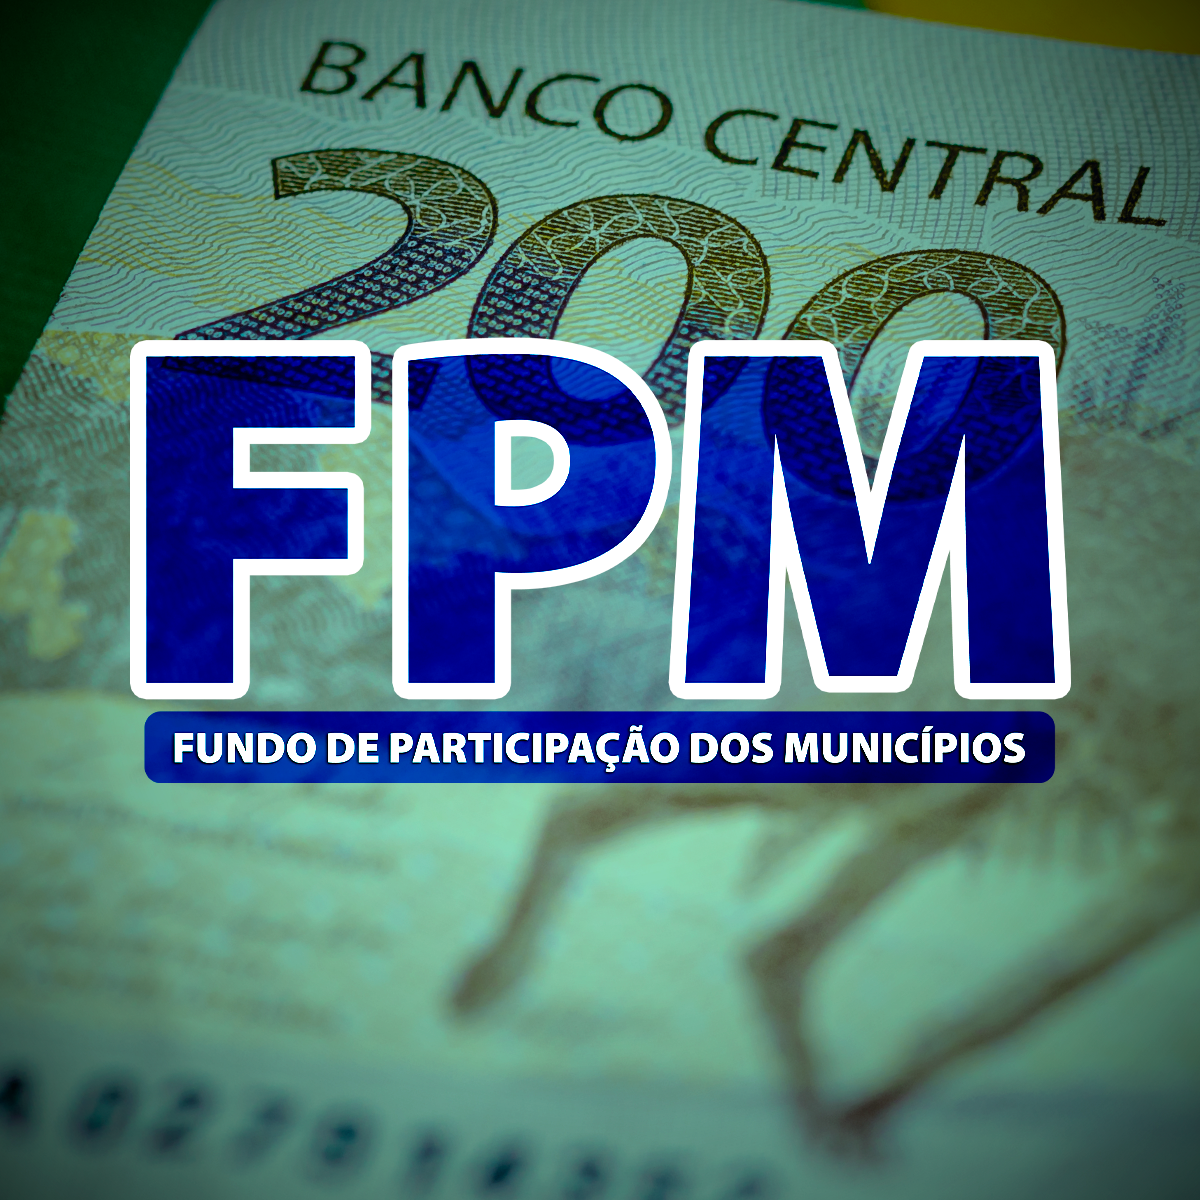 Já nos cofres municipais, último FPM de março foi de R$ 3,9 bilhões